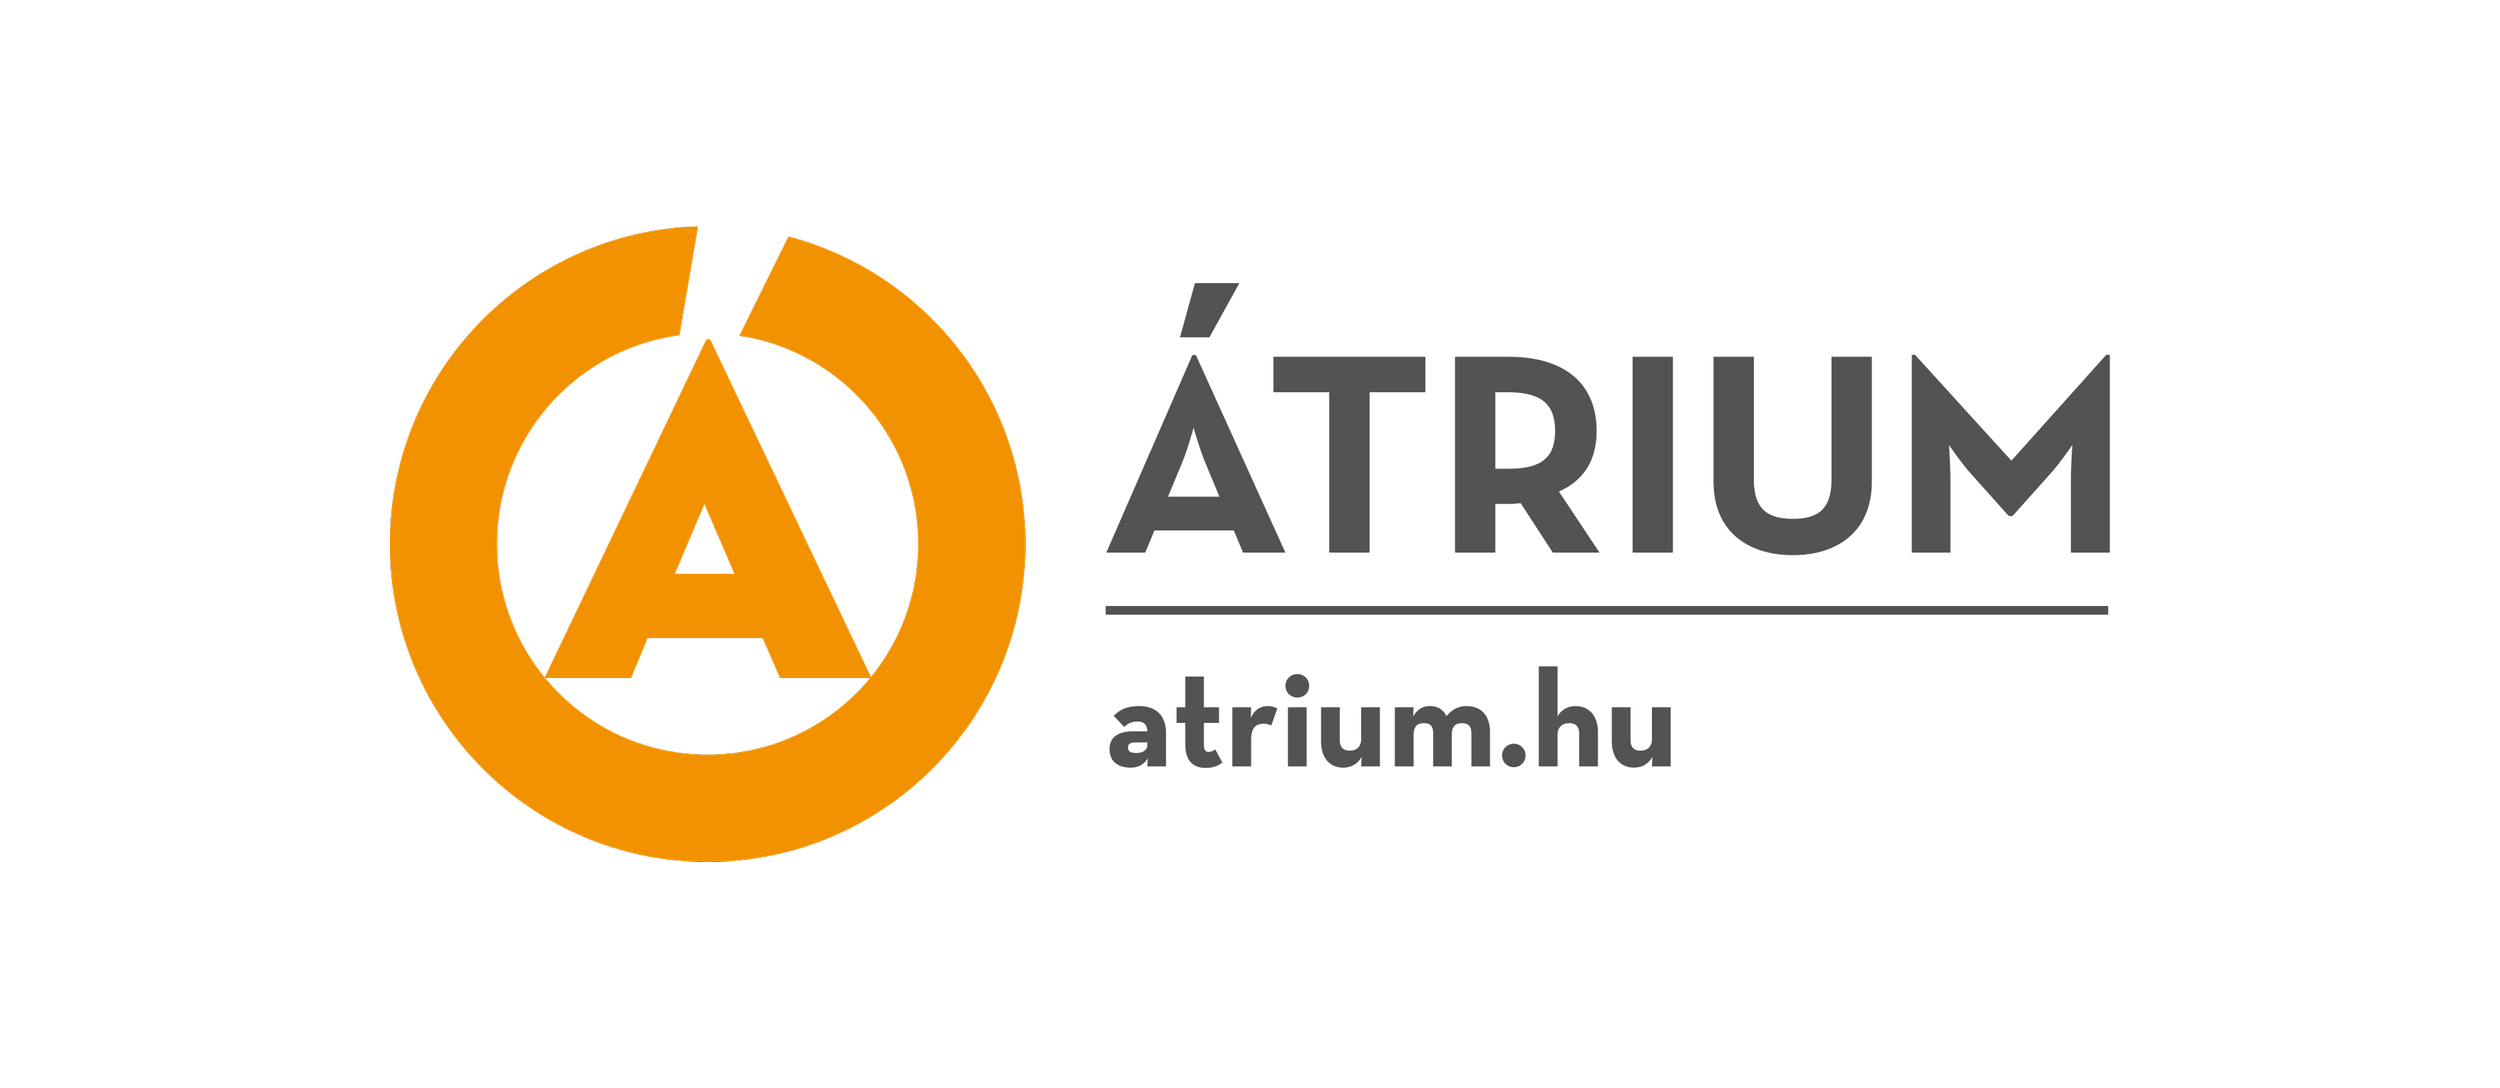 Atrium_logo_full.png